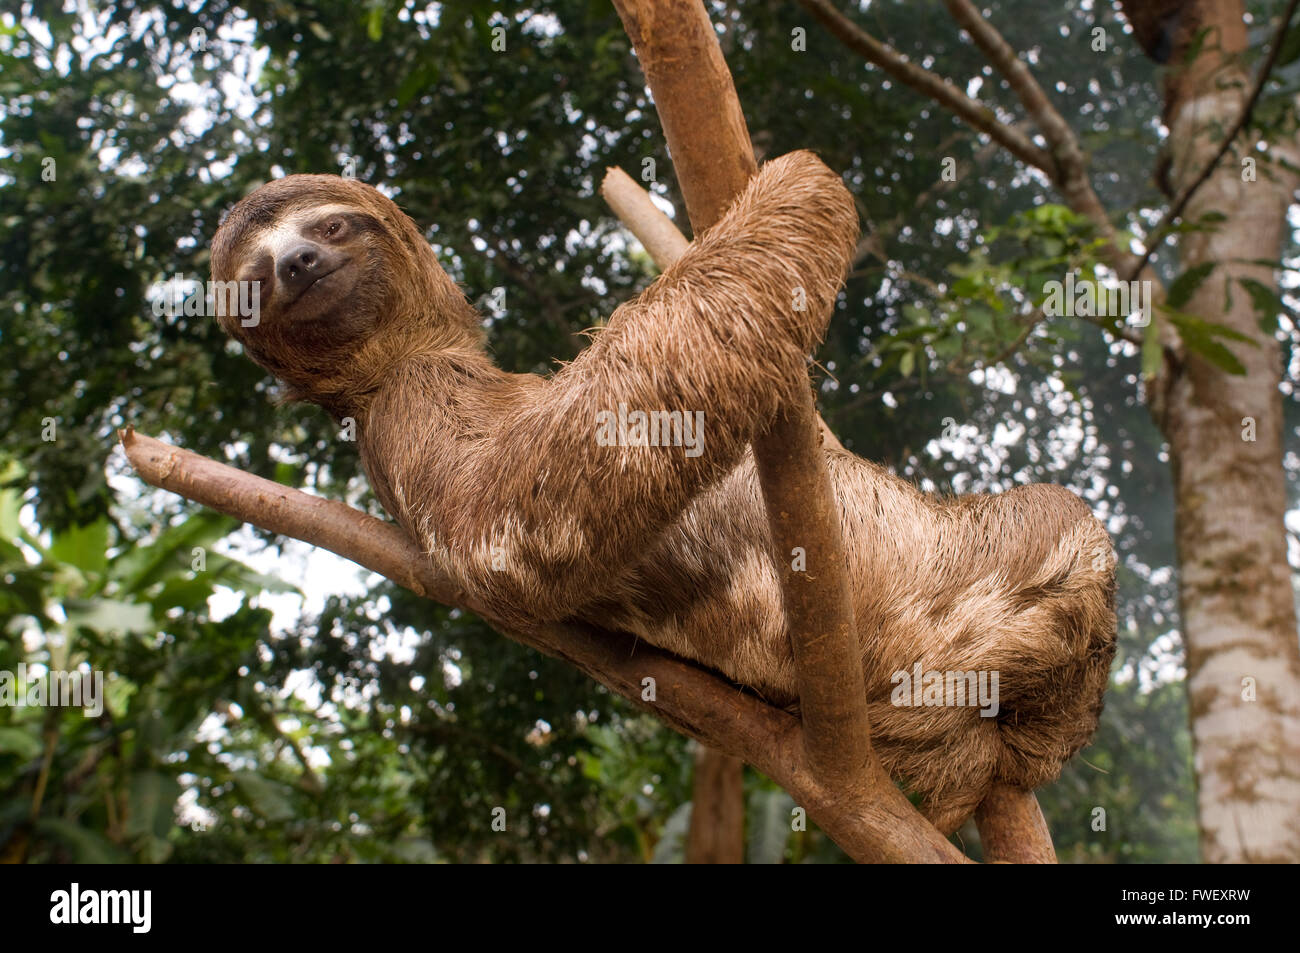 Un oso perezoso, se subió a un árbol en un bosque primario en la selva amazónica, cerca de la ciudad de Iquitos, Loreto, Perú. Los perezosos son medianas m Foto de stock